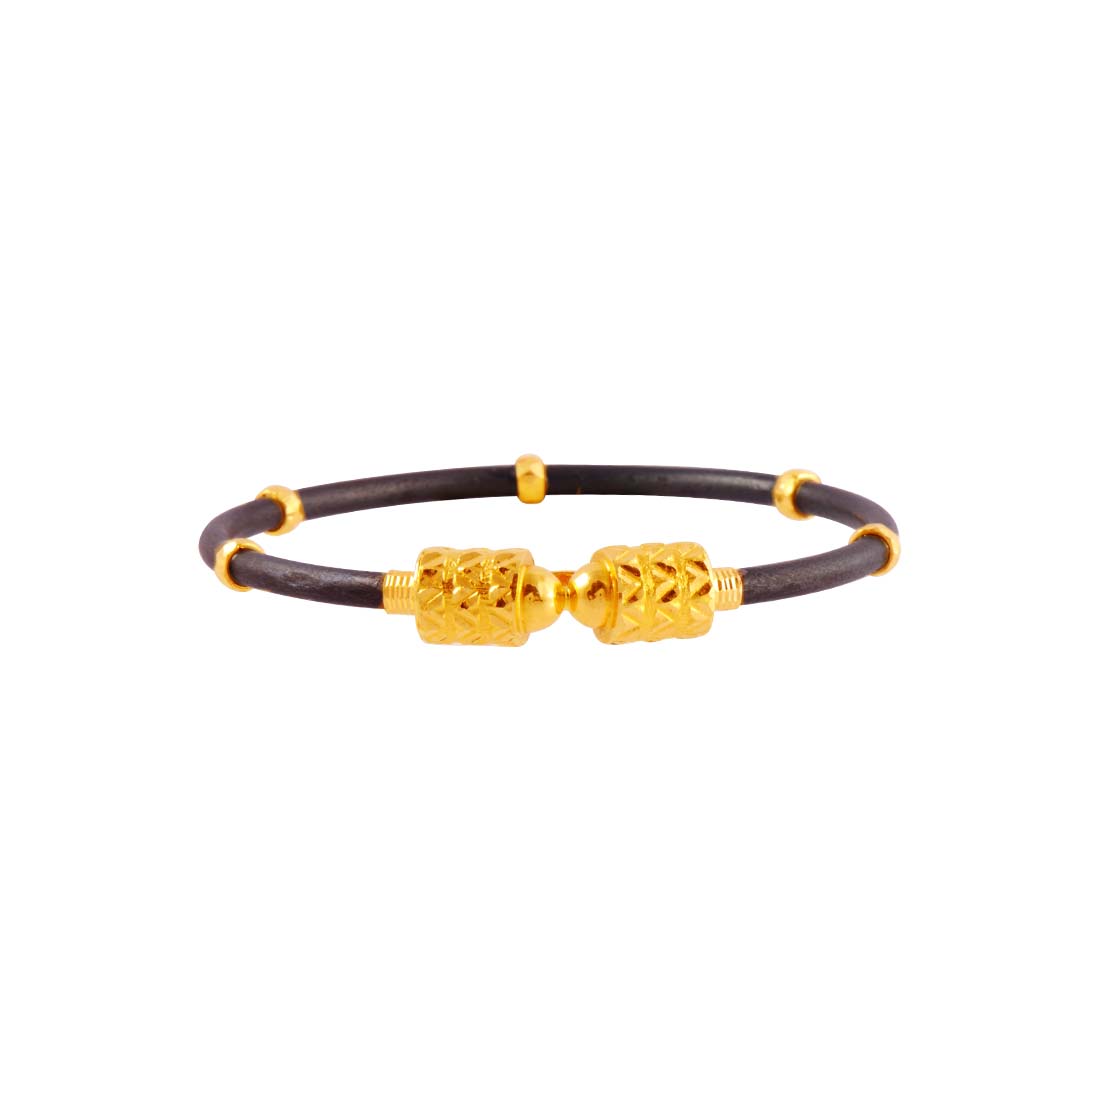 gold braceletsgold bracelet for womenbangle type braceletladies gold  braceletbracelet for womenbracelet goldscrew type bra